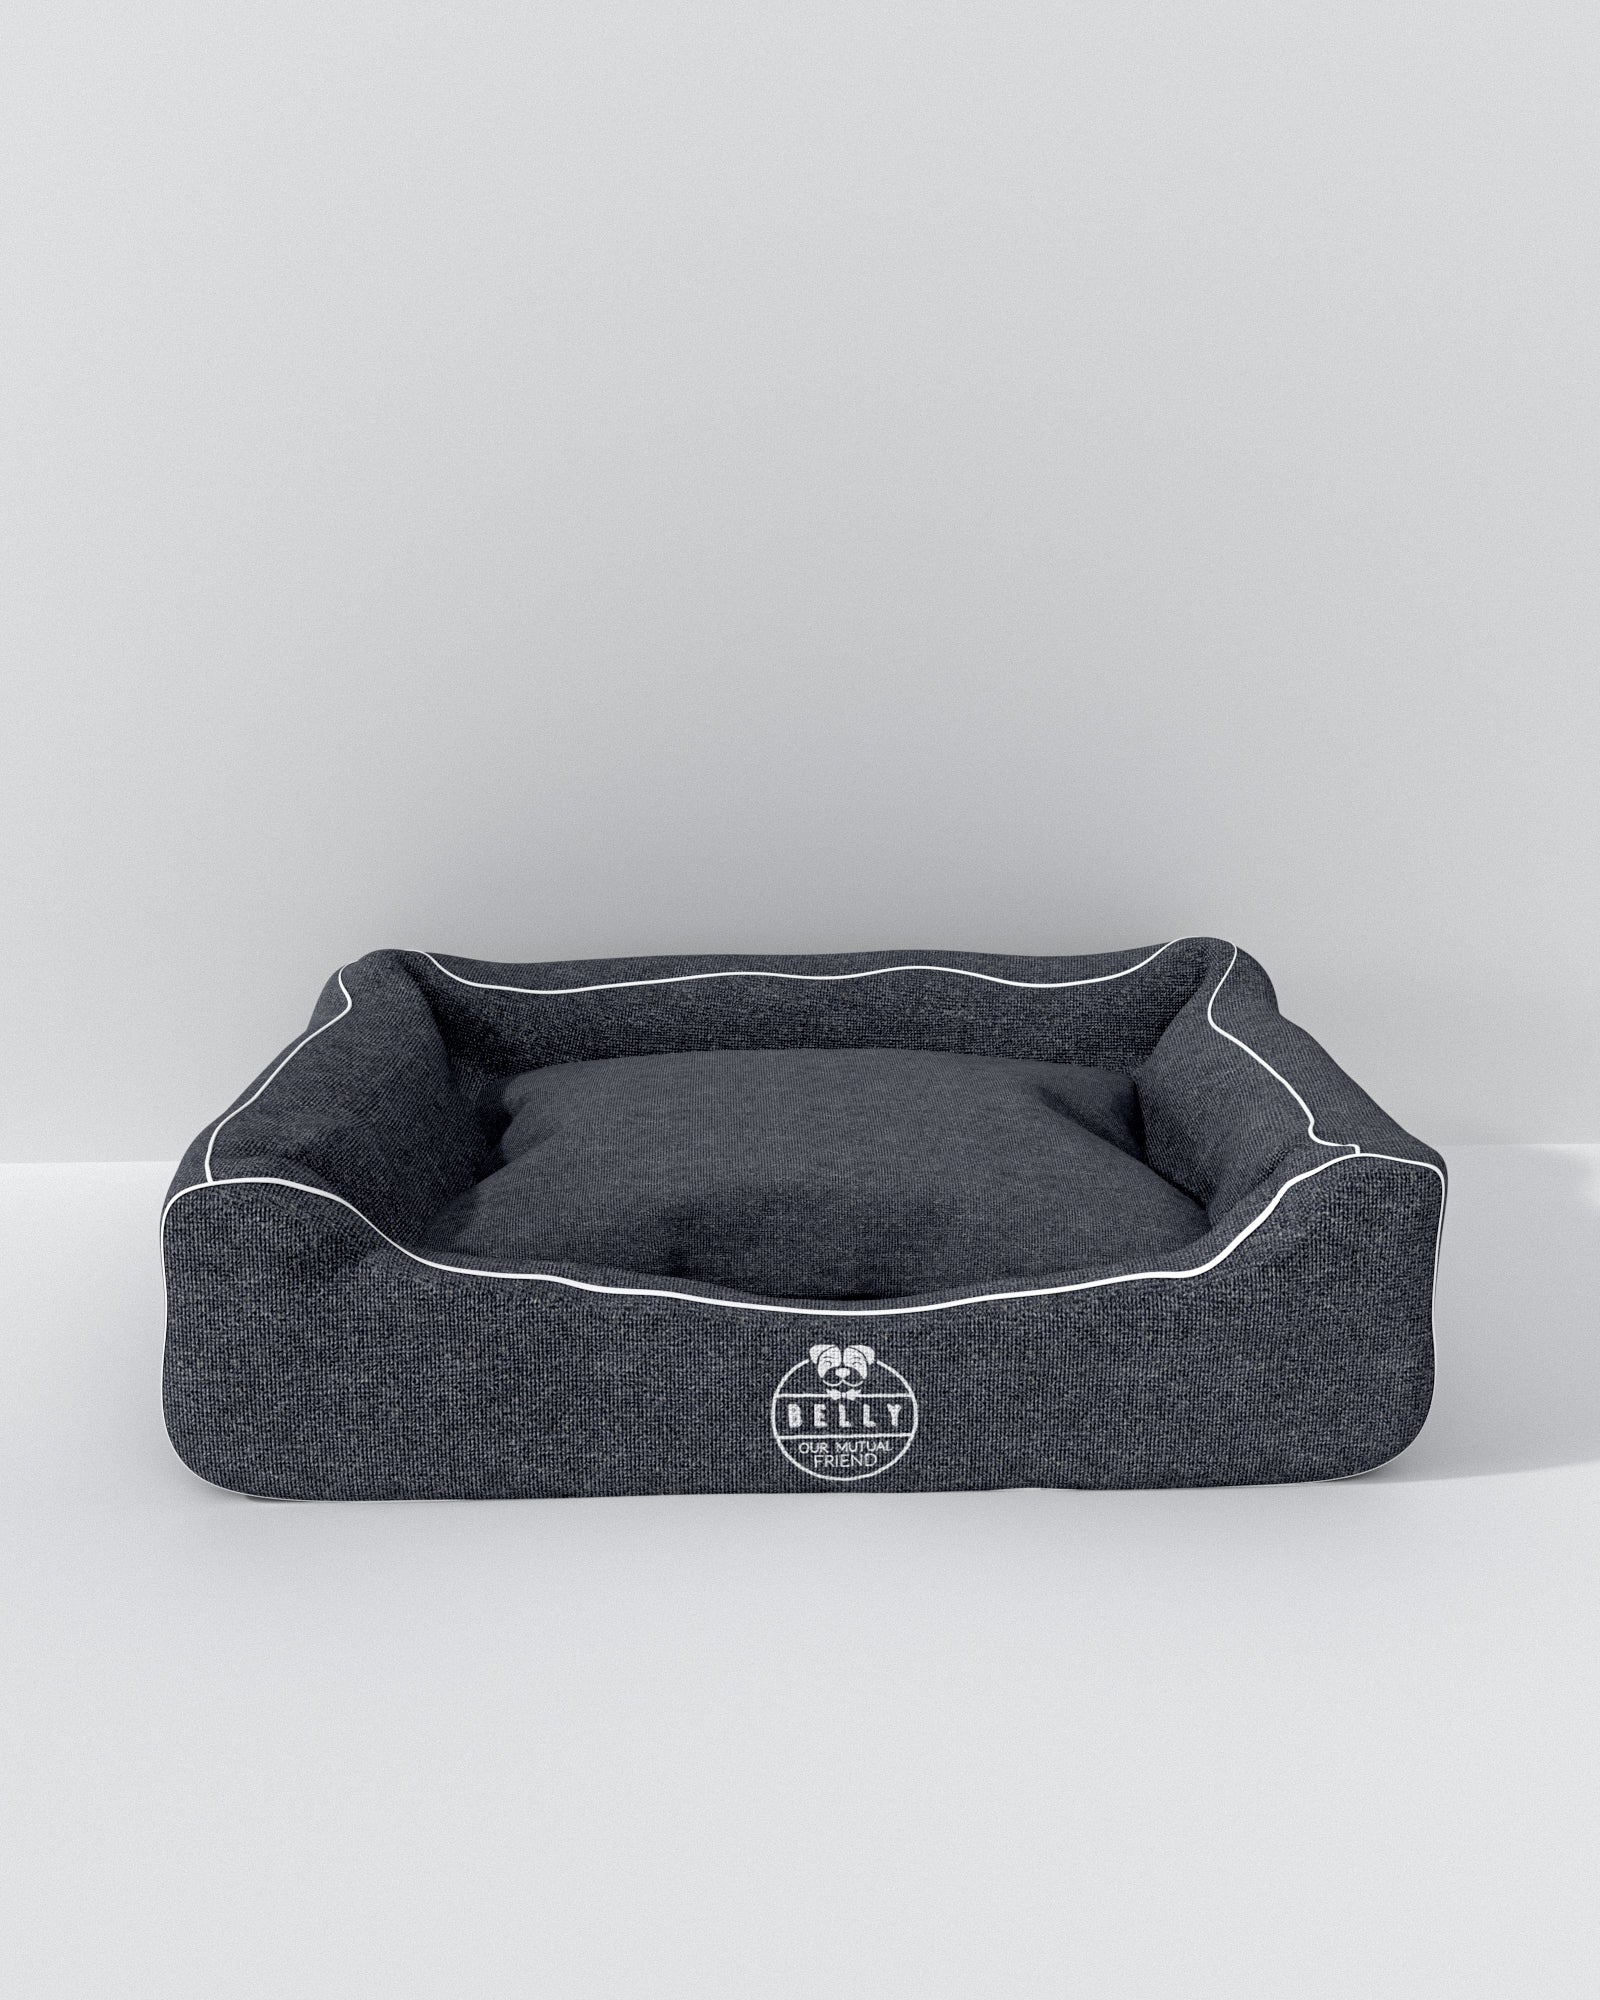 Elegant Dog bed